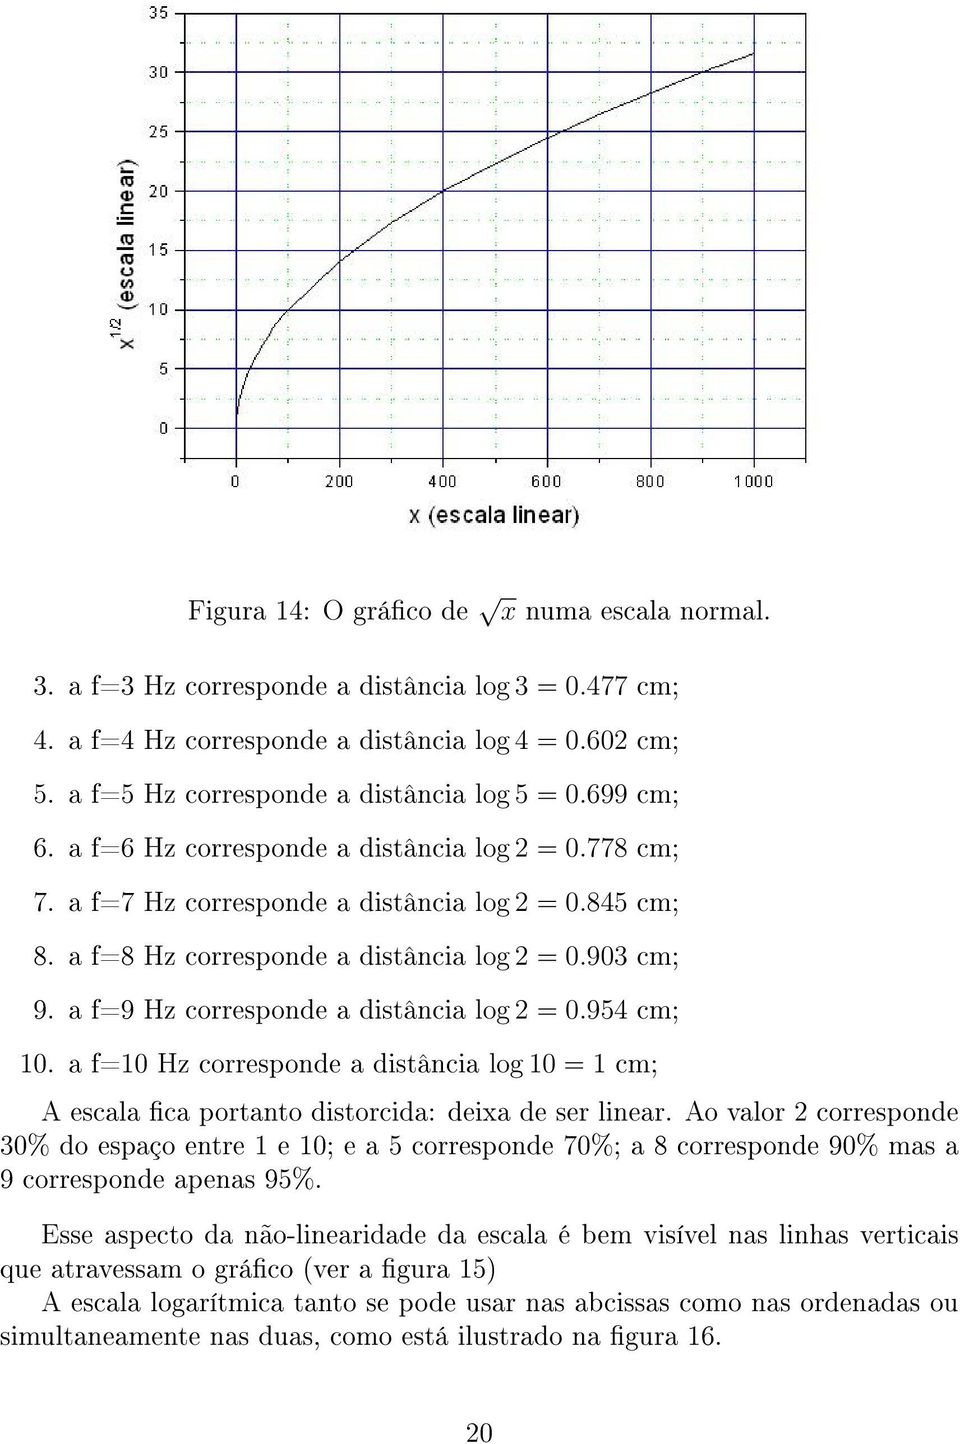 a f=9 Hz corresponde a distância log 2 = 0.954 cm; 10. a f=10 Hz corresponde a distância log 10 = 1 cm; A escala ca portanto distorcida: deixa de ser linear.